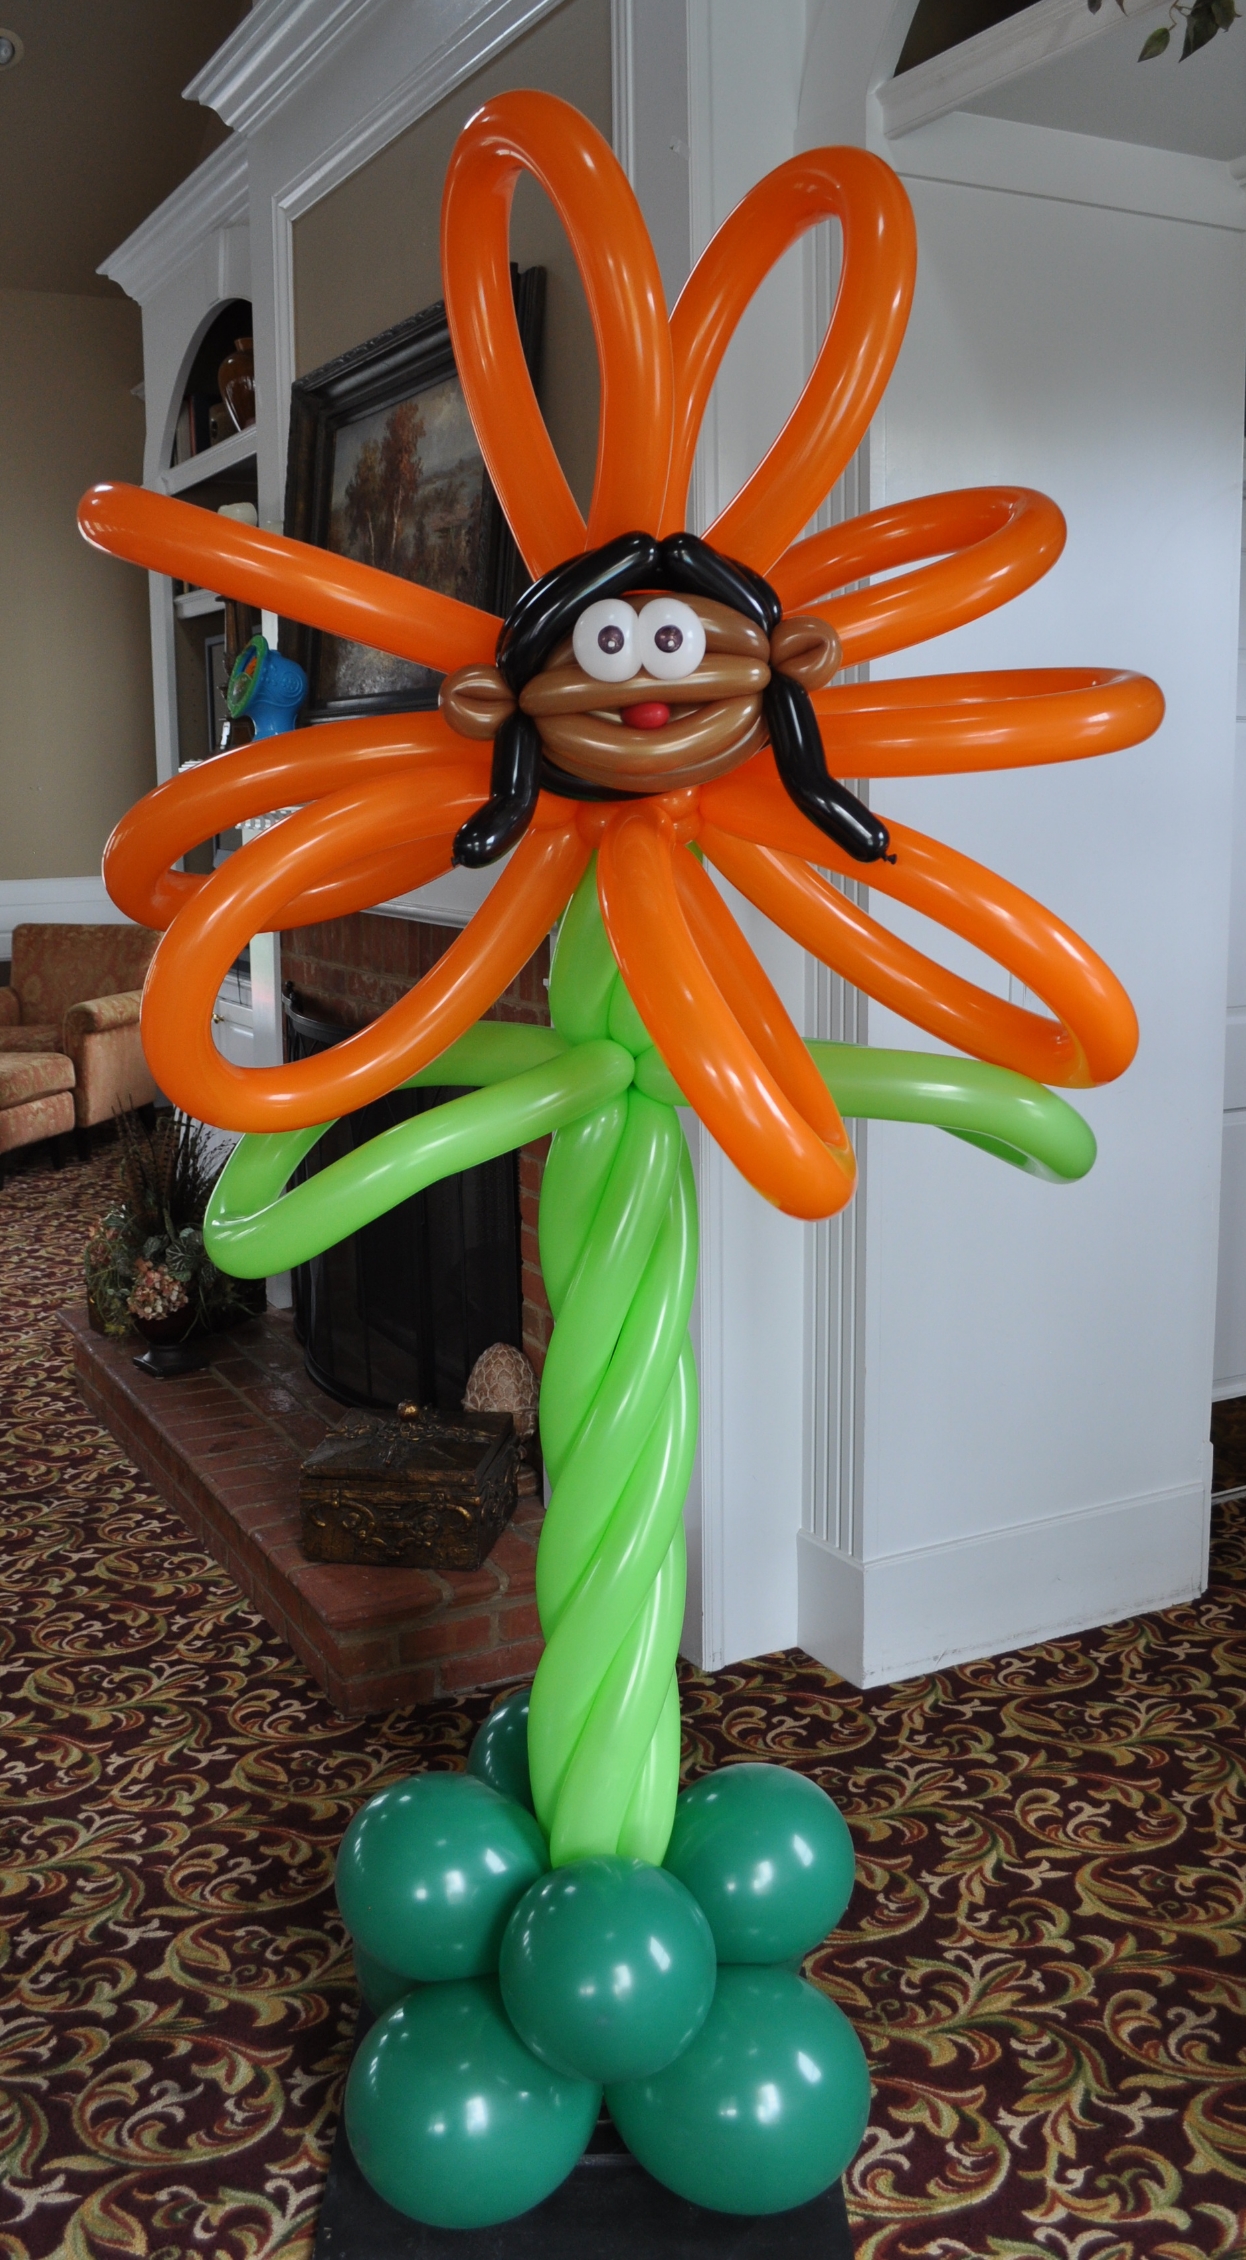 Alice in wonderland balloon orange talking flower